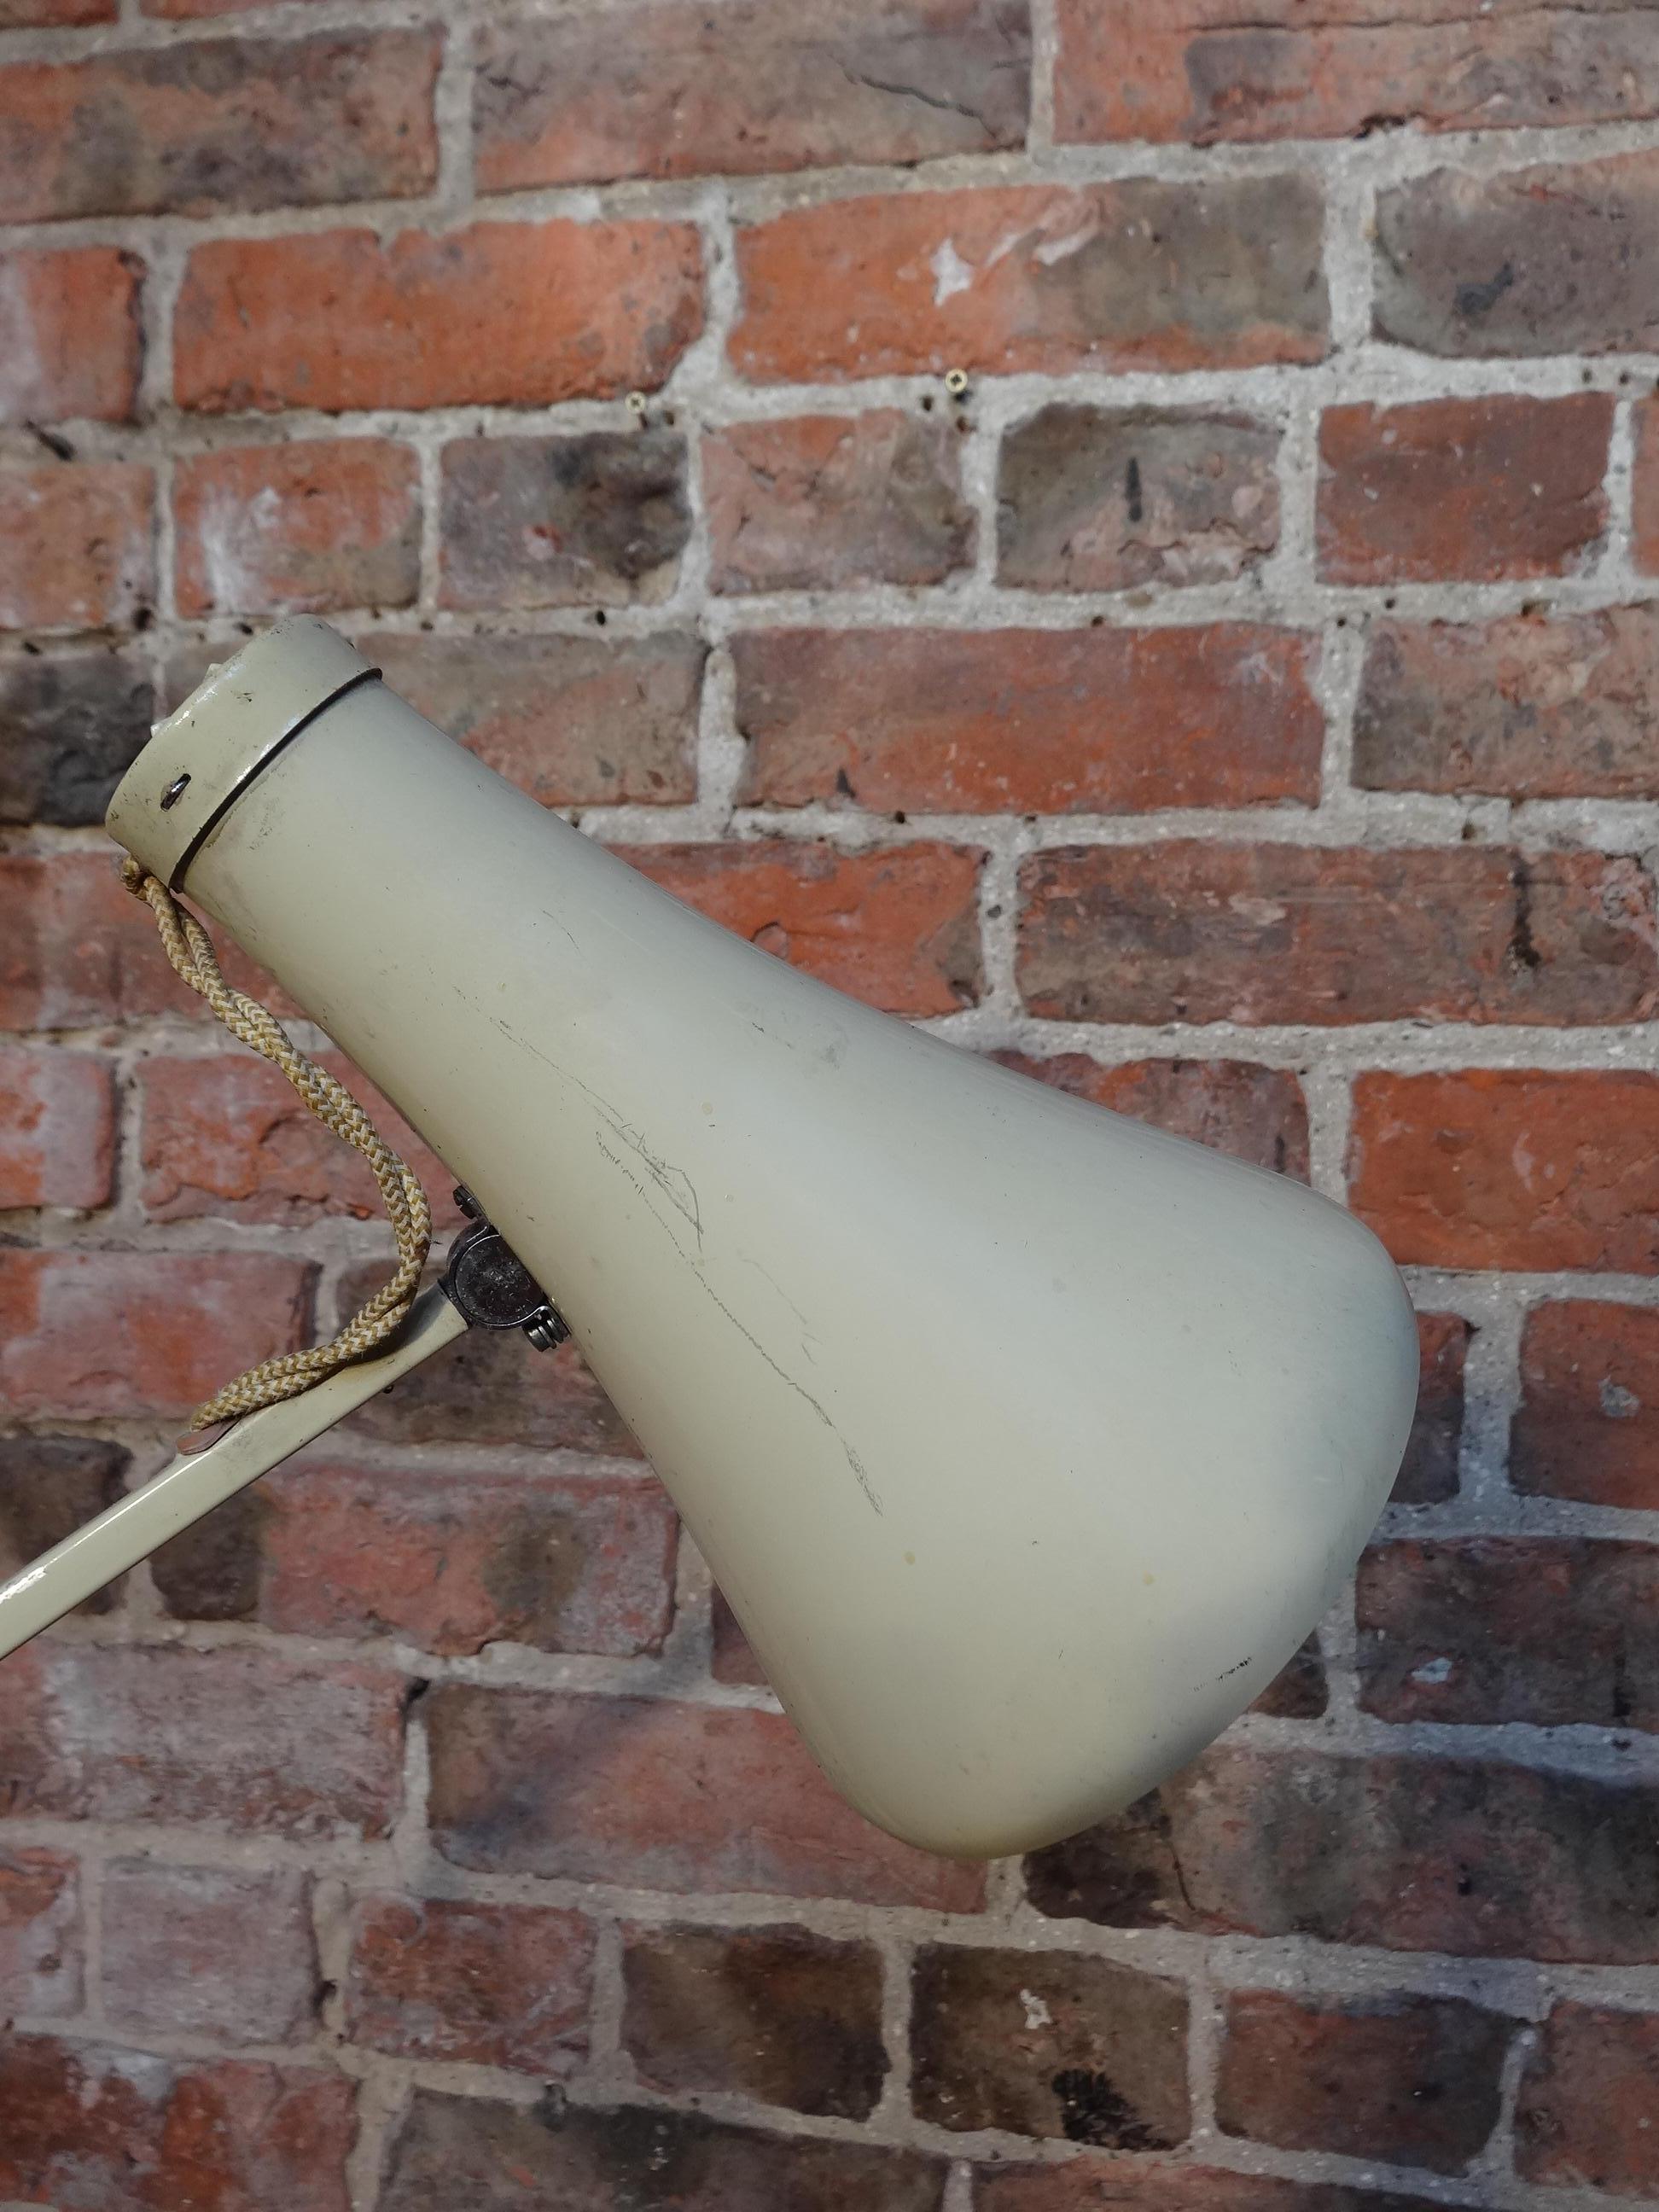 Lampe Anglepoise grise conçue par George Carwardine pour Herbert Terry.

Mesure : H 71cm, D 15cm, W 30cm.